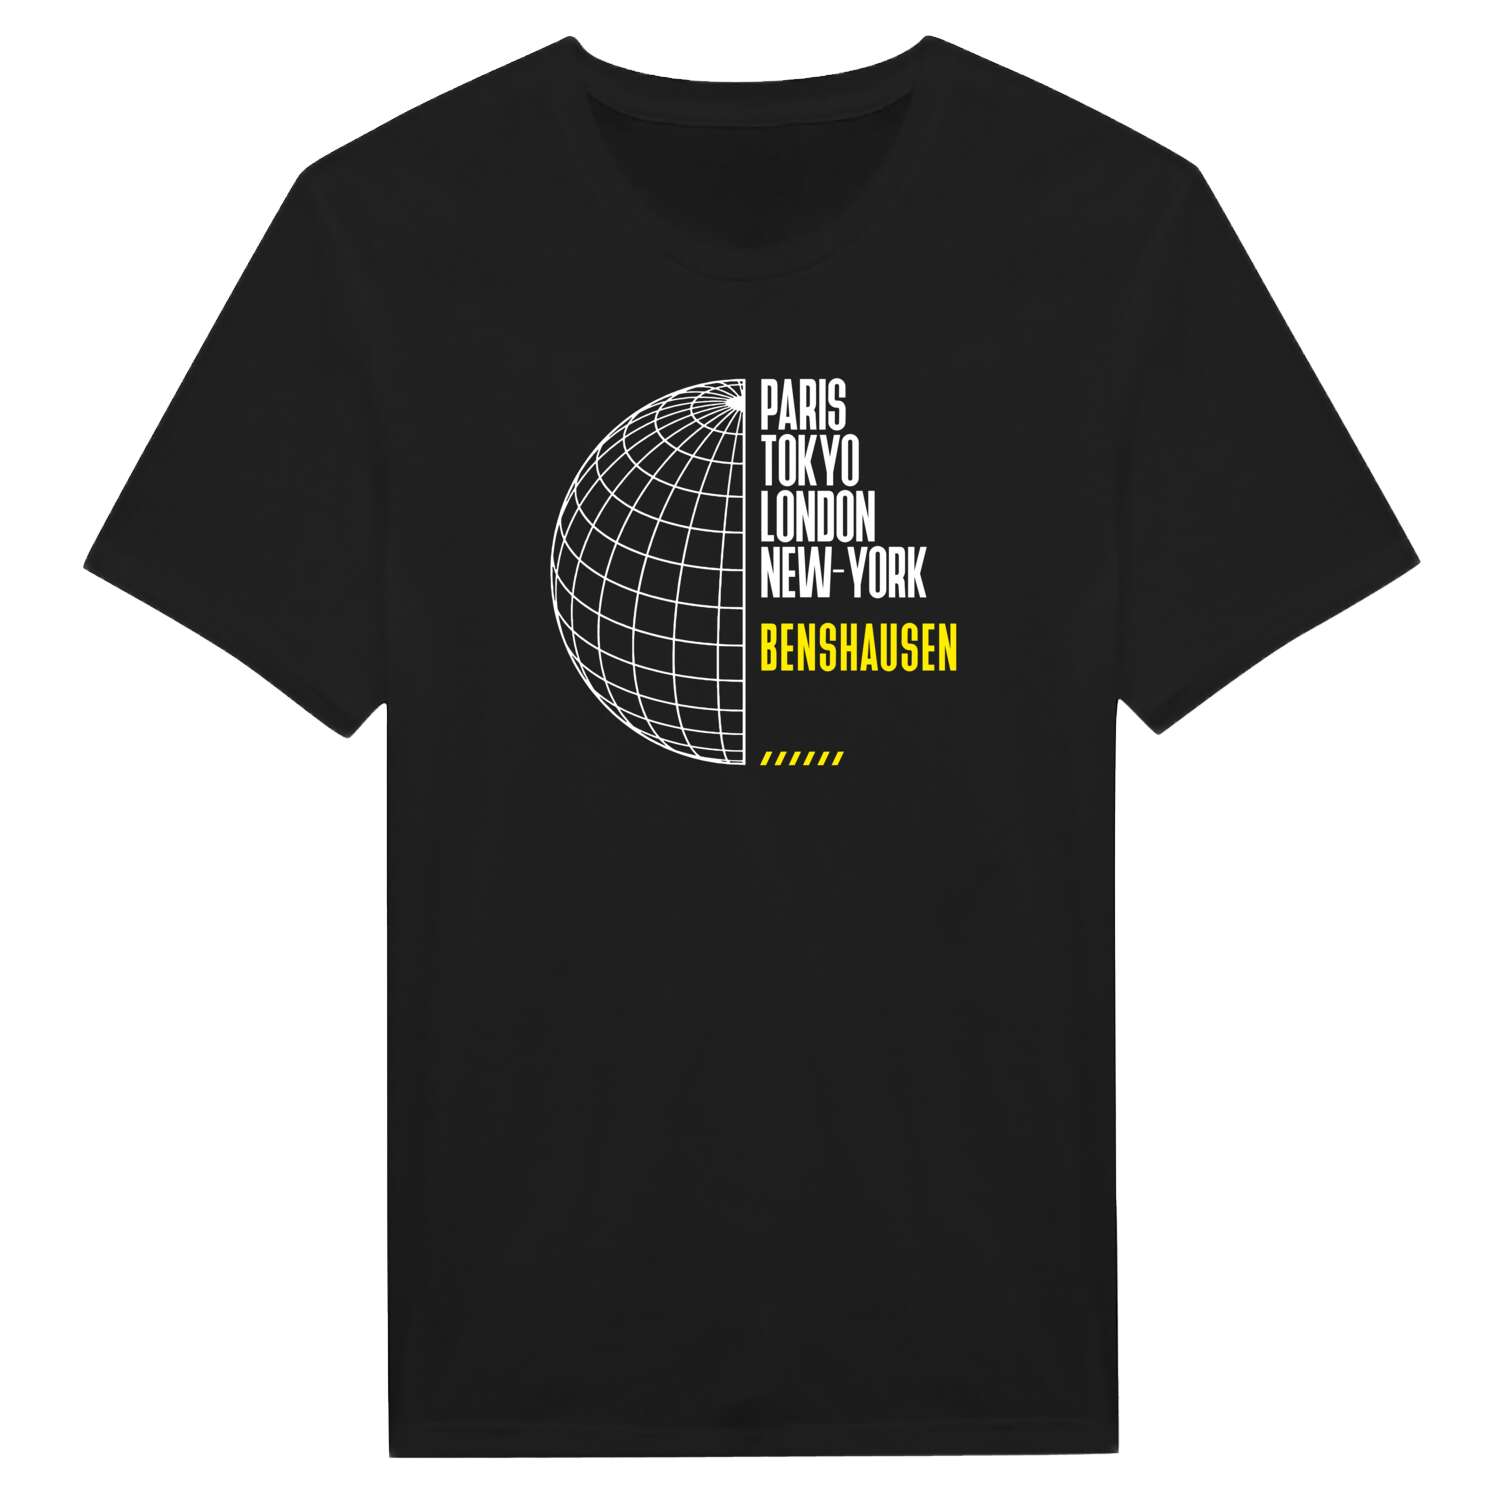 Benshausen T-Shirt »Paris Tokyo London«